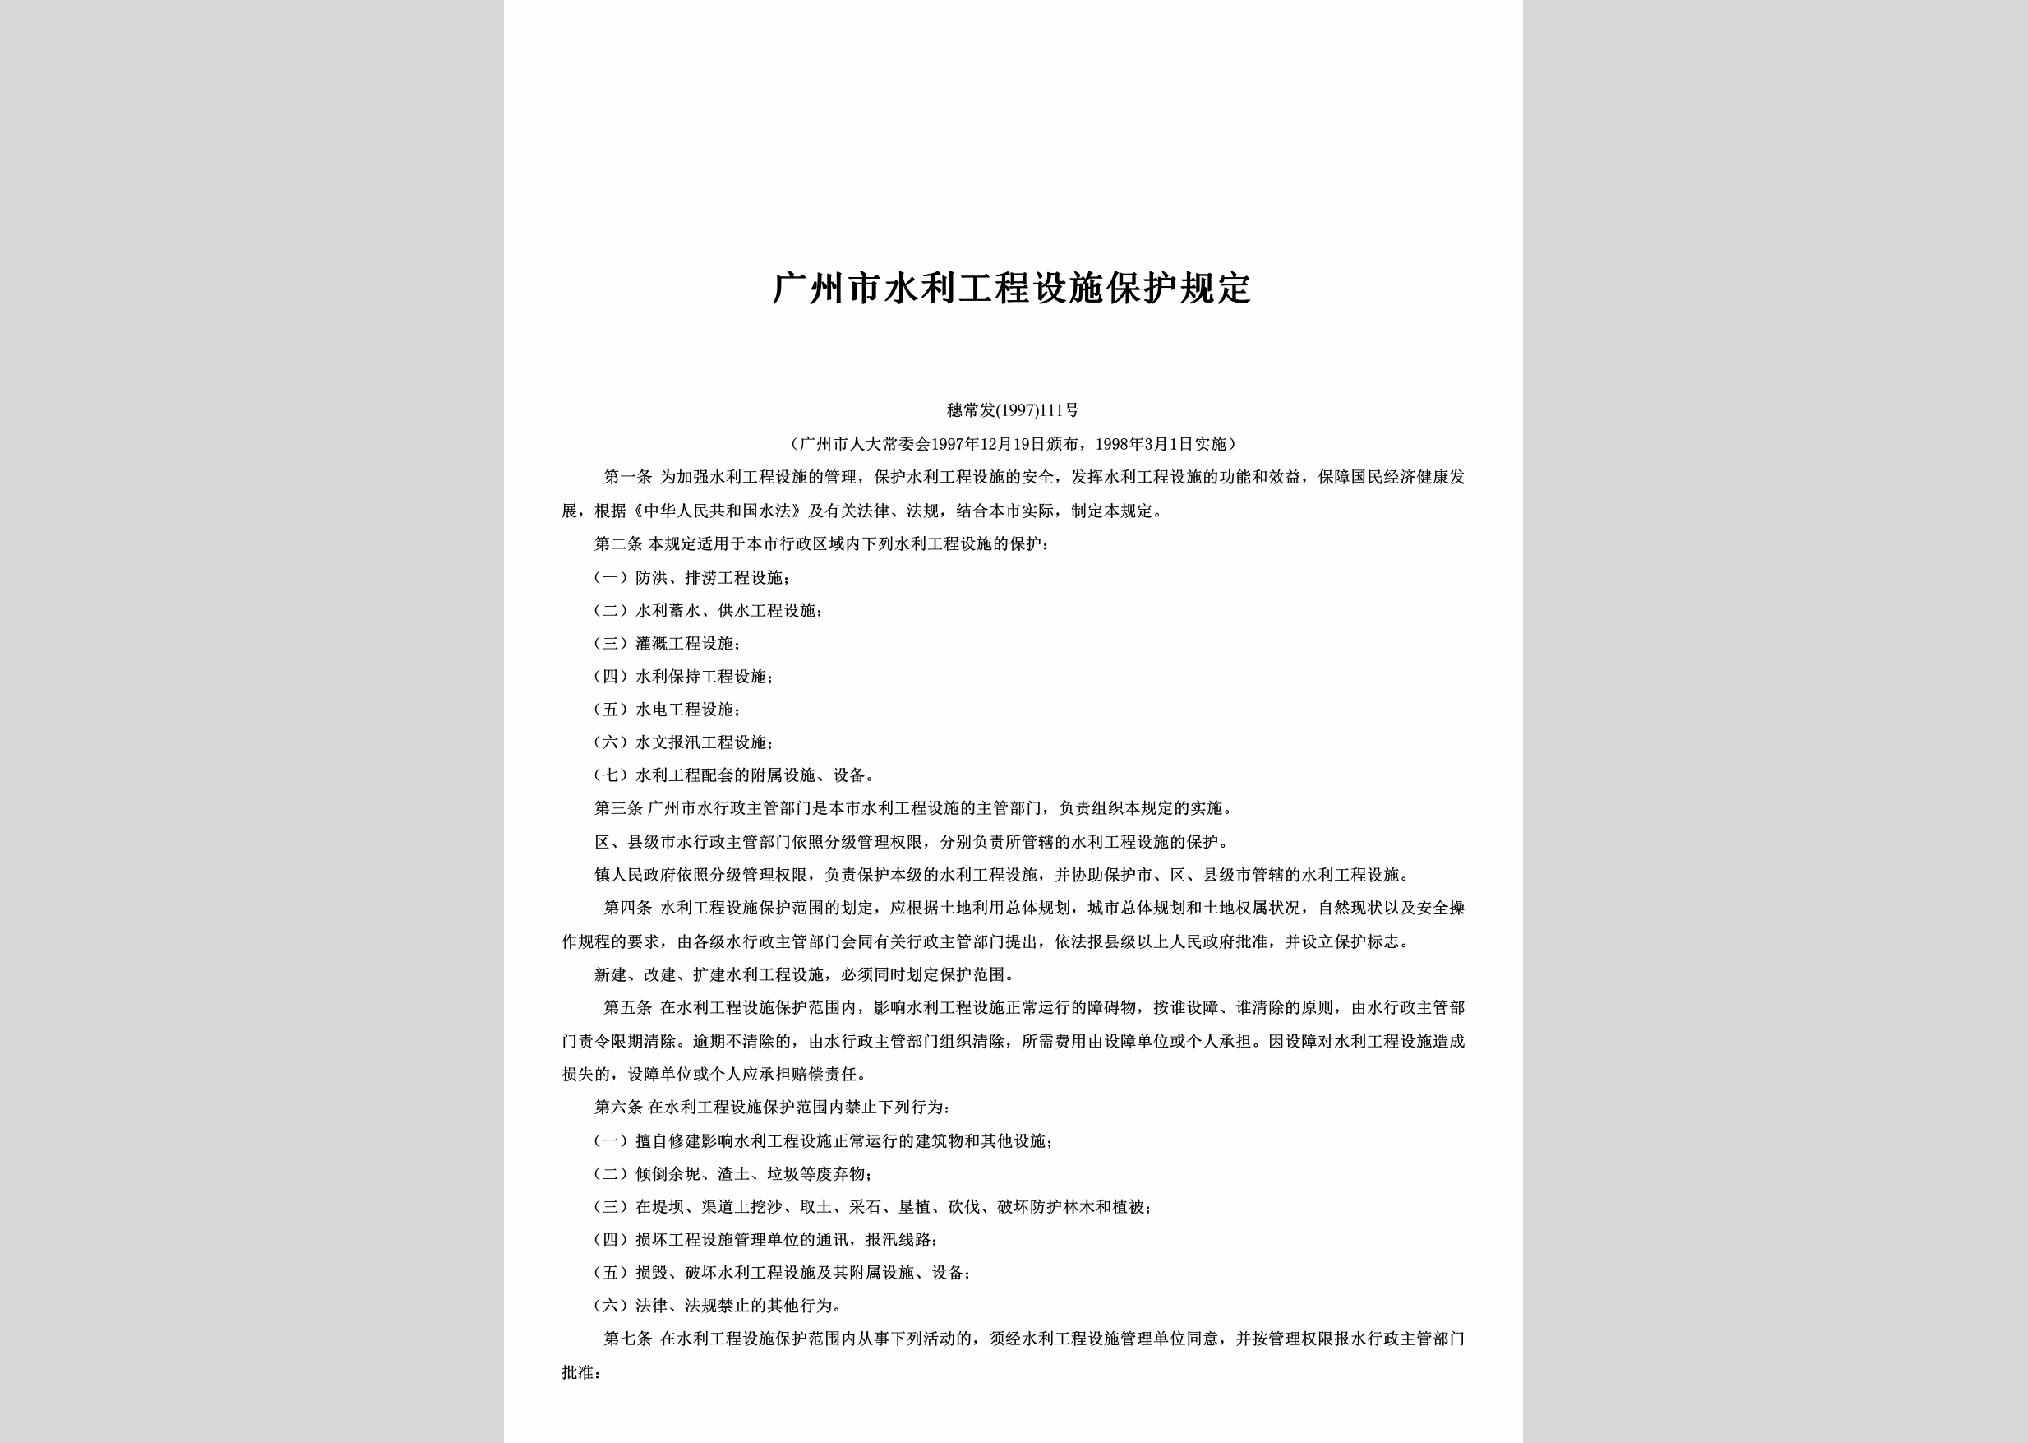 穗常发[1997]111号：广州市水利工程设施保护规定